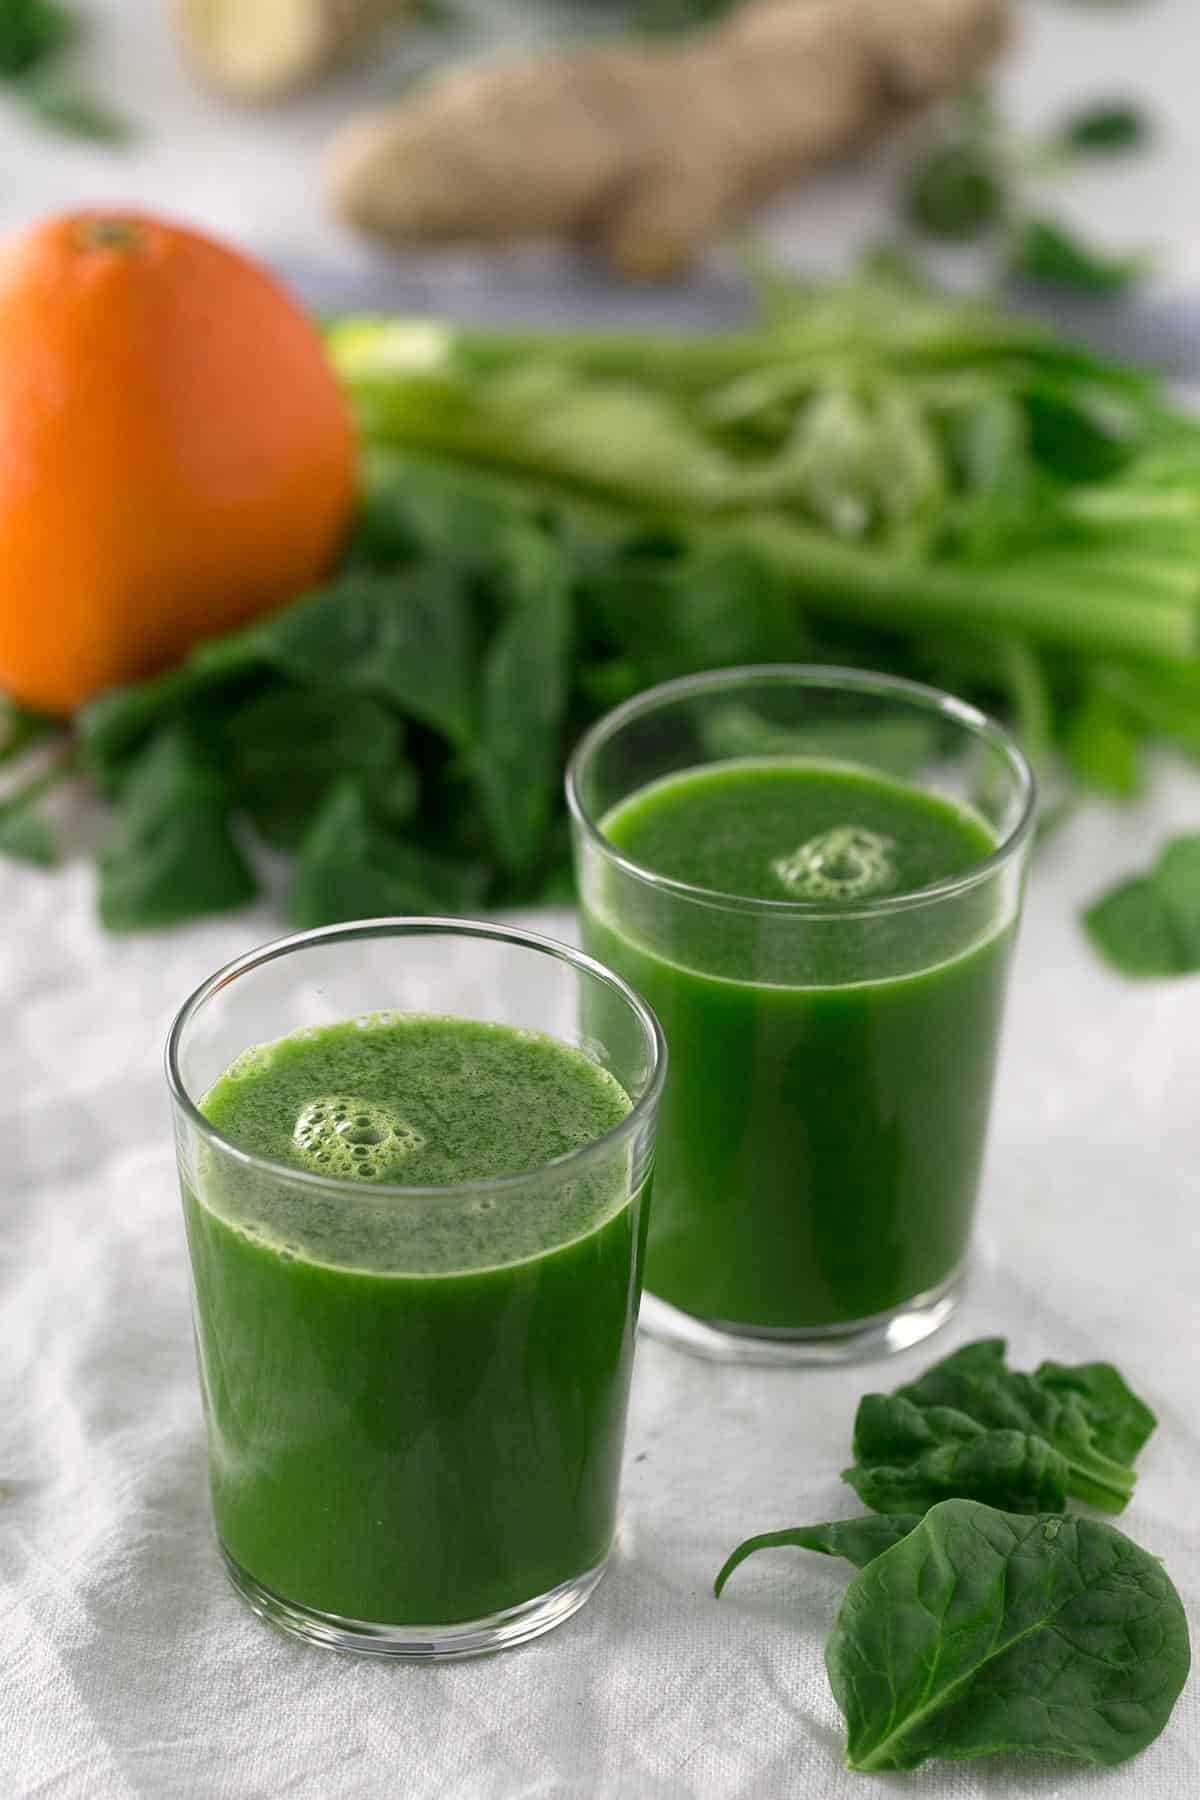 Zumo Anti Resfriado.- Este zumo es perfecto para prevenir y combatir resfriados. Las frutas y verduras crudas son necesarias para estas sanos y fortalecer nuestro sistema inmune.